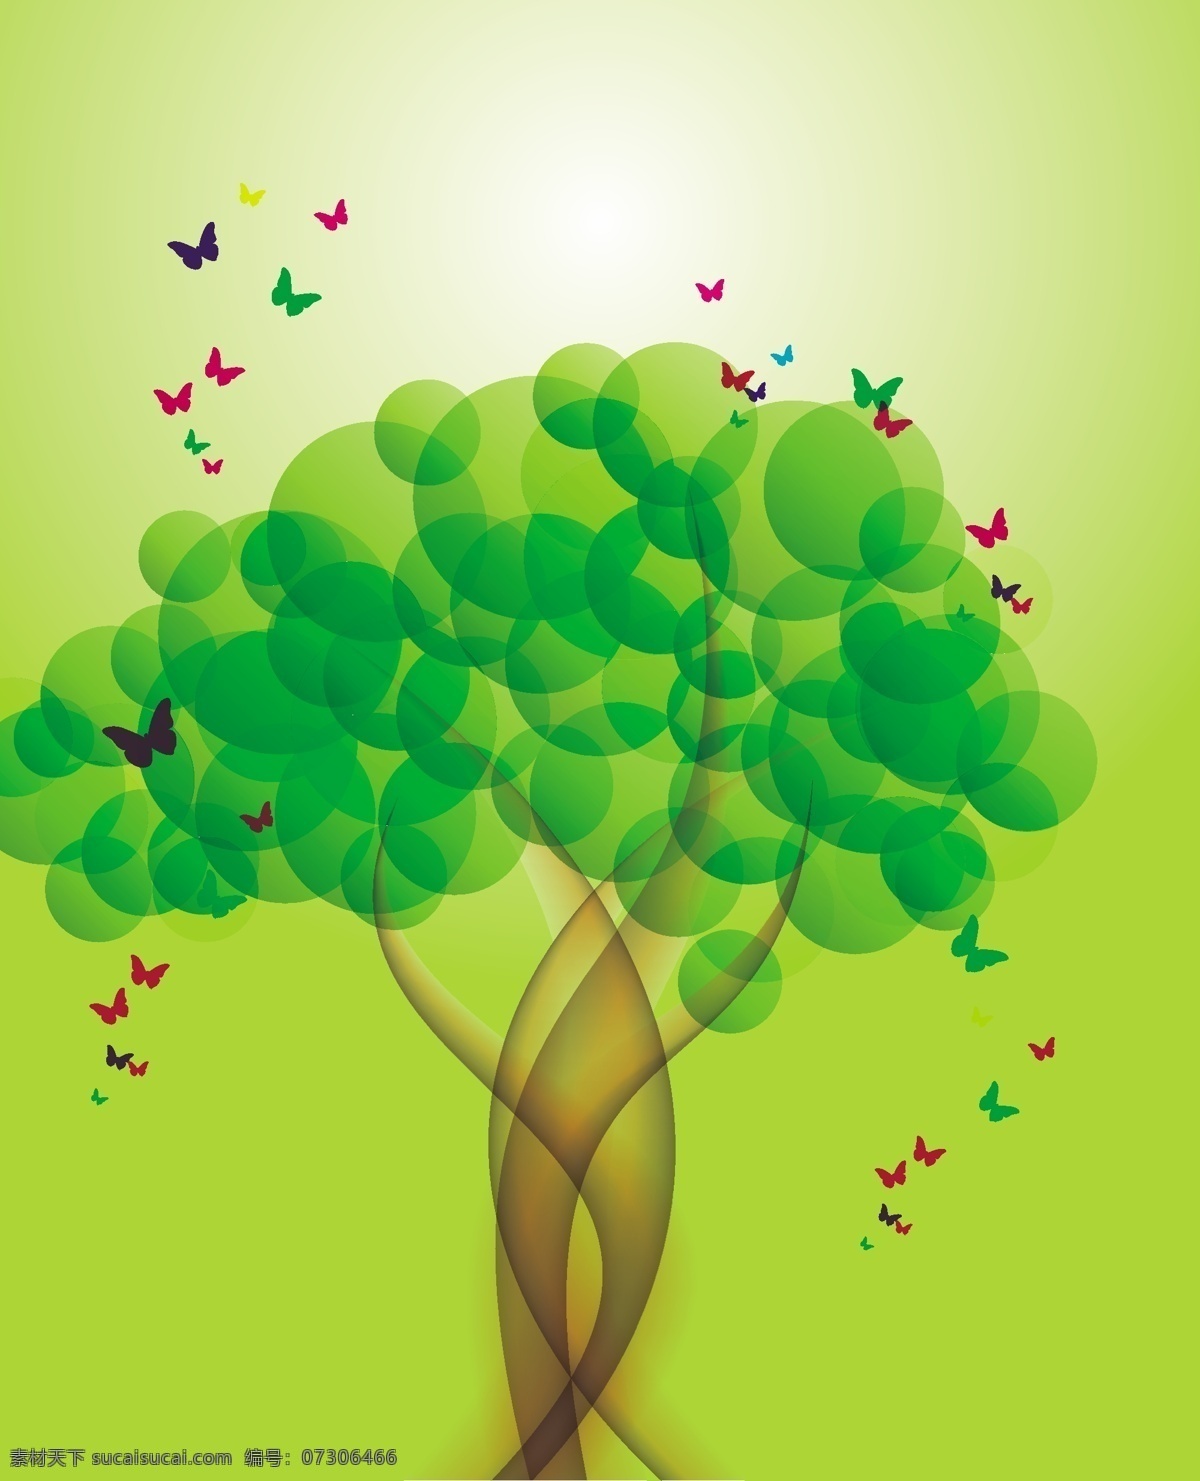 翠绿色的树木 抽象 树木 蝴蝶 绿色